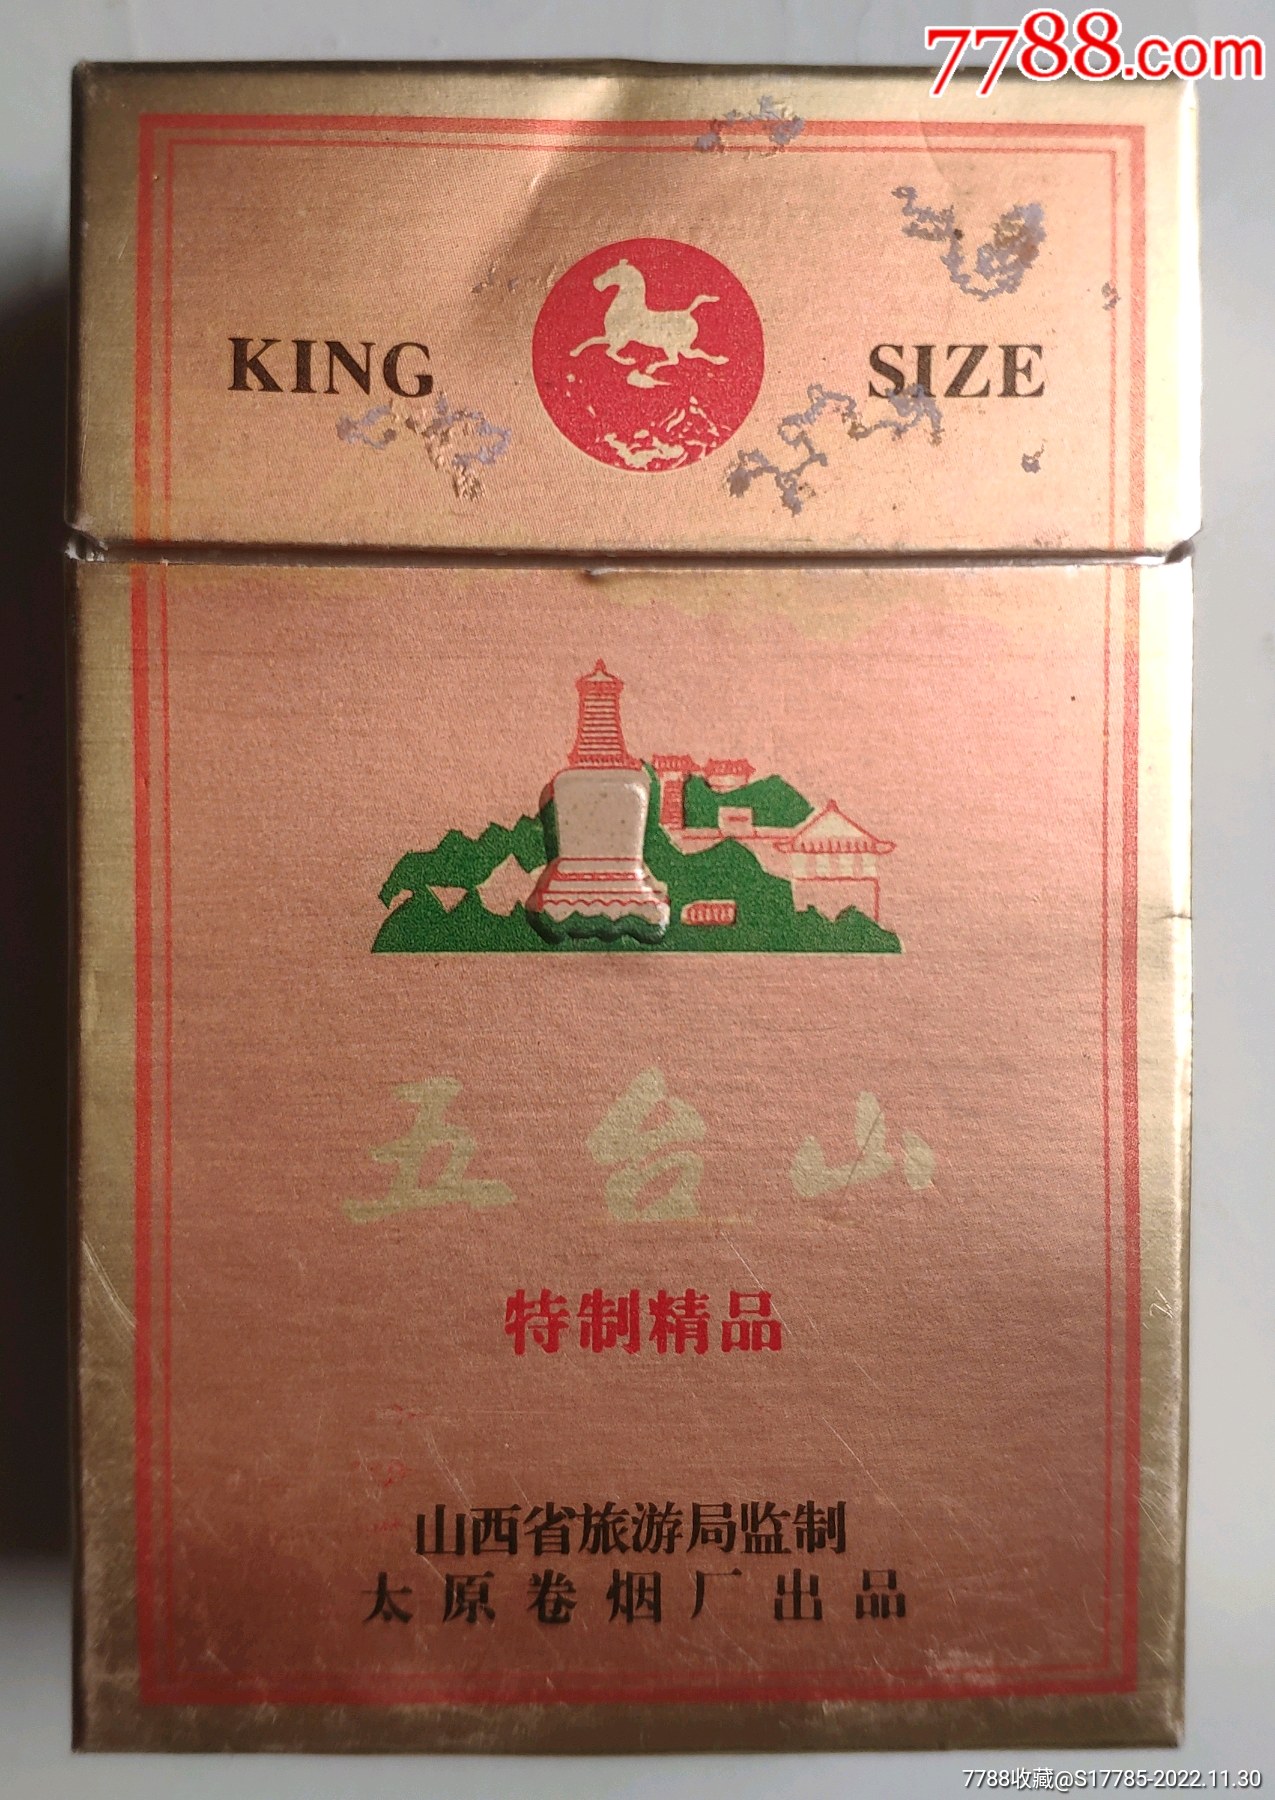 烟盒五台山山西省旅游局监制太原卷烟厂出品